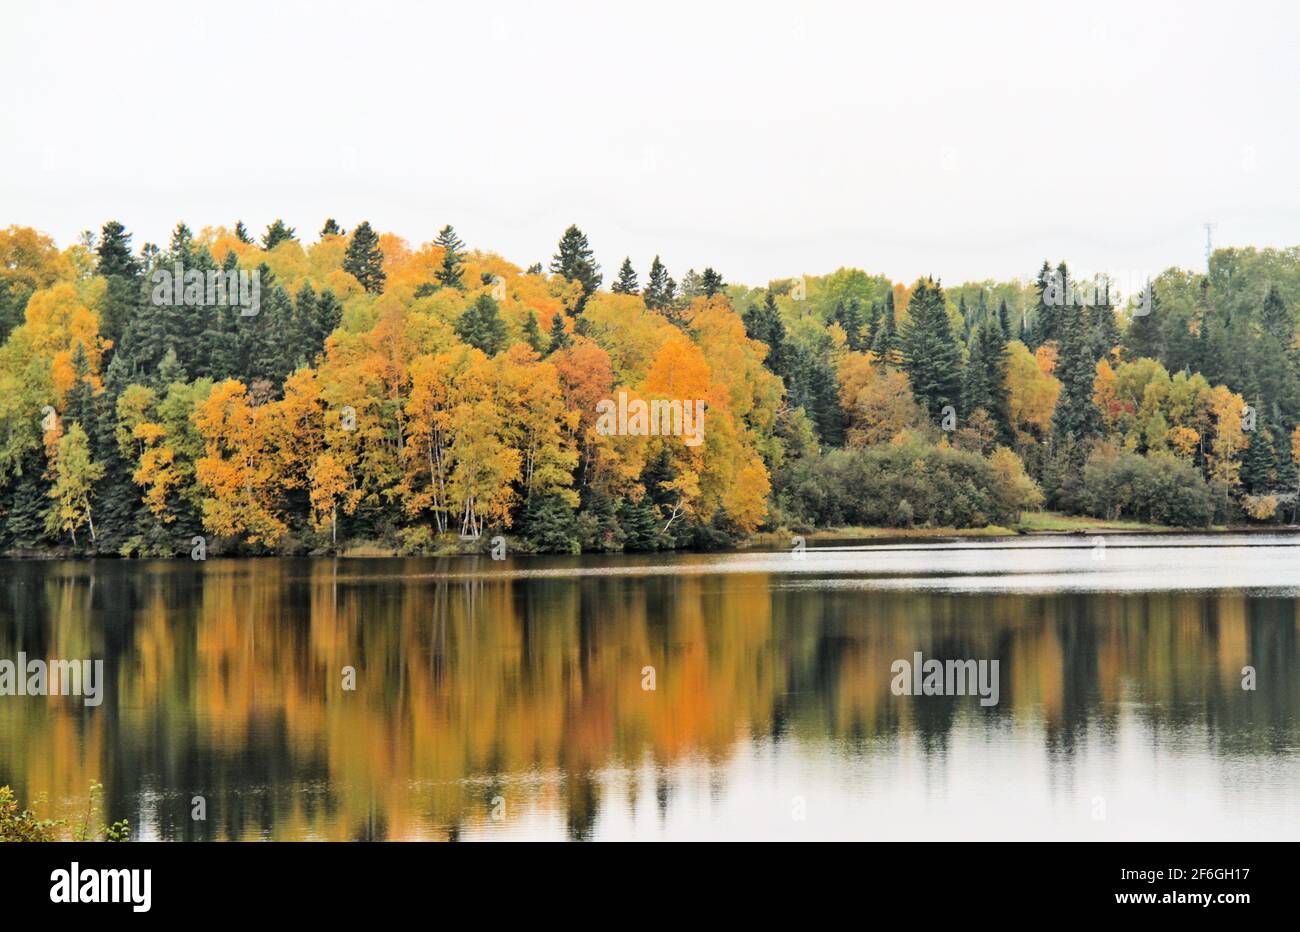 Wunderschöne, herbstfarbene Wälder am Boulevard Lake, da der See an einem teilweise sonnigen Tag die bunten Bäume widerspiegelt. Stockfoto